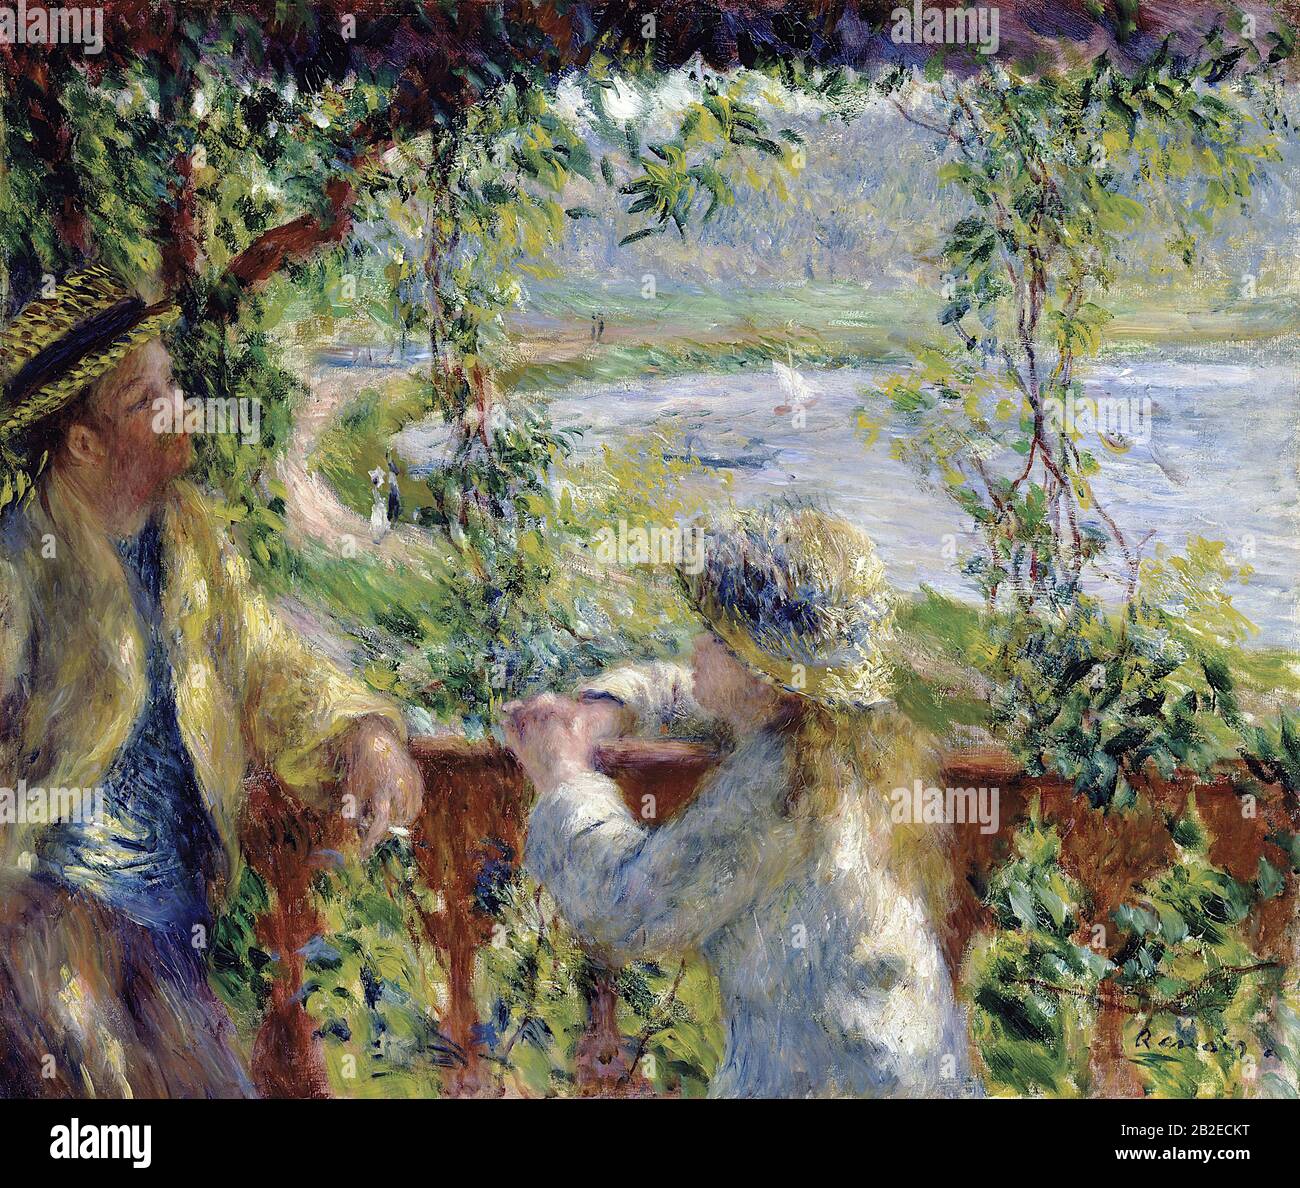 D'Acqua (Vicino al lago) (Circa 1880) - Ottocento Pittura di Pierre-Auguste Renoir - Altissima risoluzione e qualità d'immagine Foto Stock